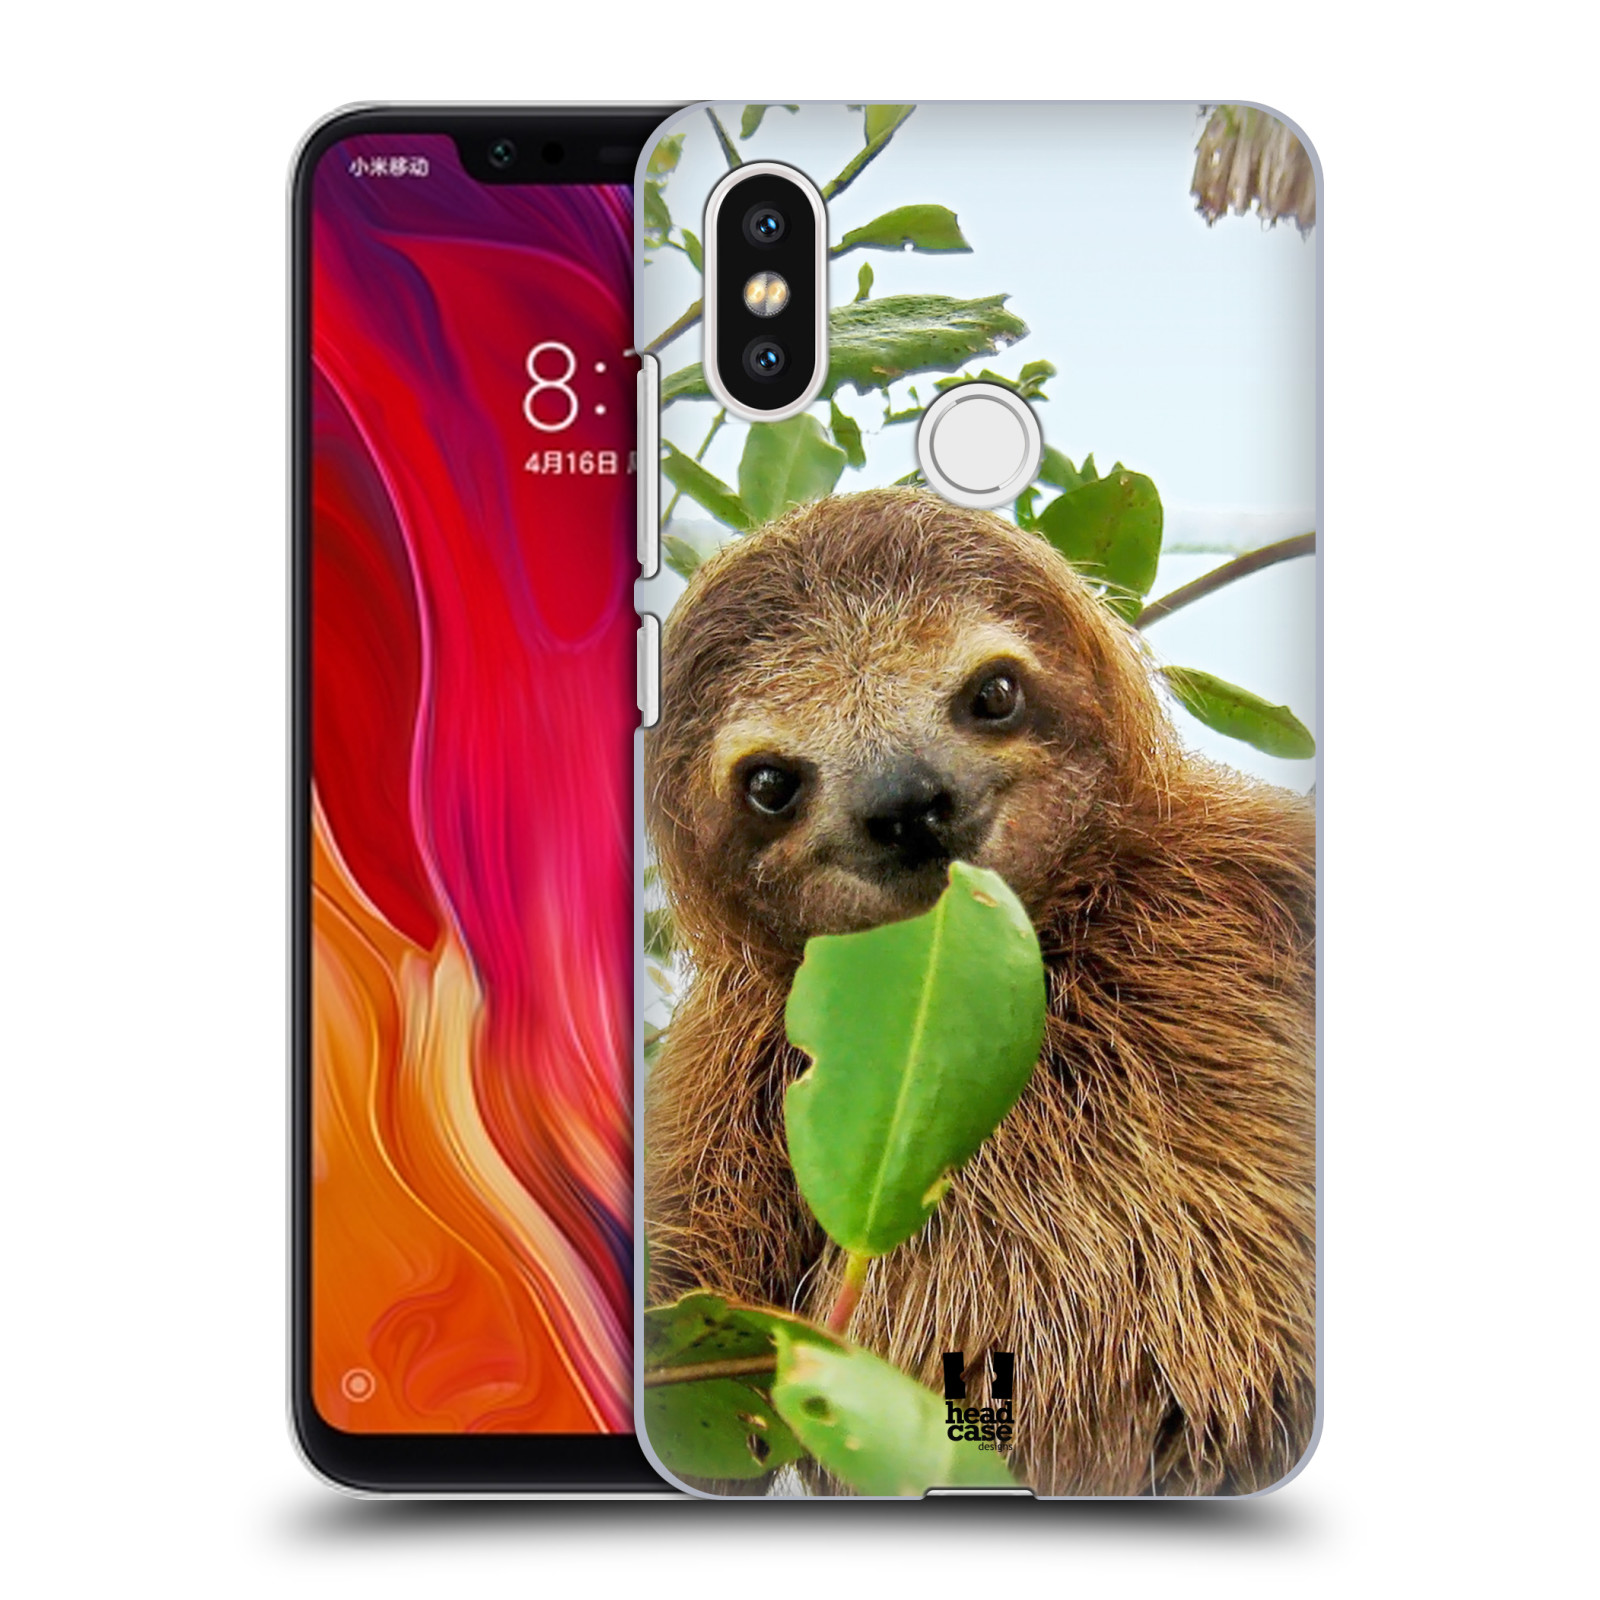 HEAD CASE plastový obal na mobil Xiaomi Mi 8 vzor slavná zvířata foto lenochod